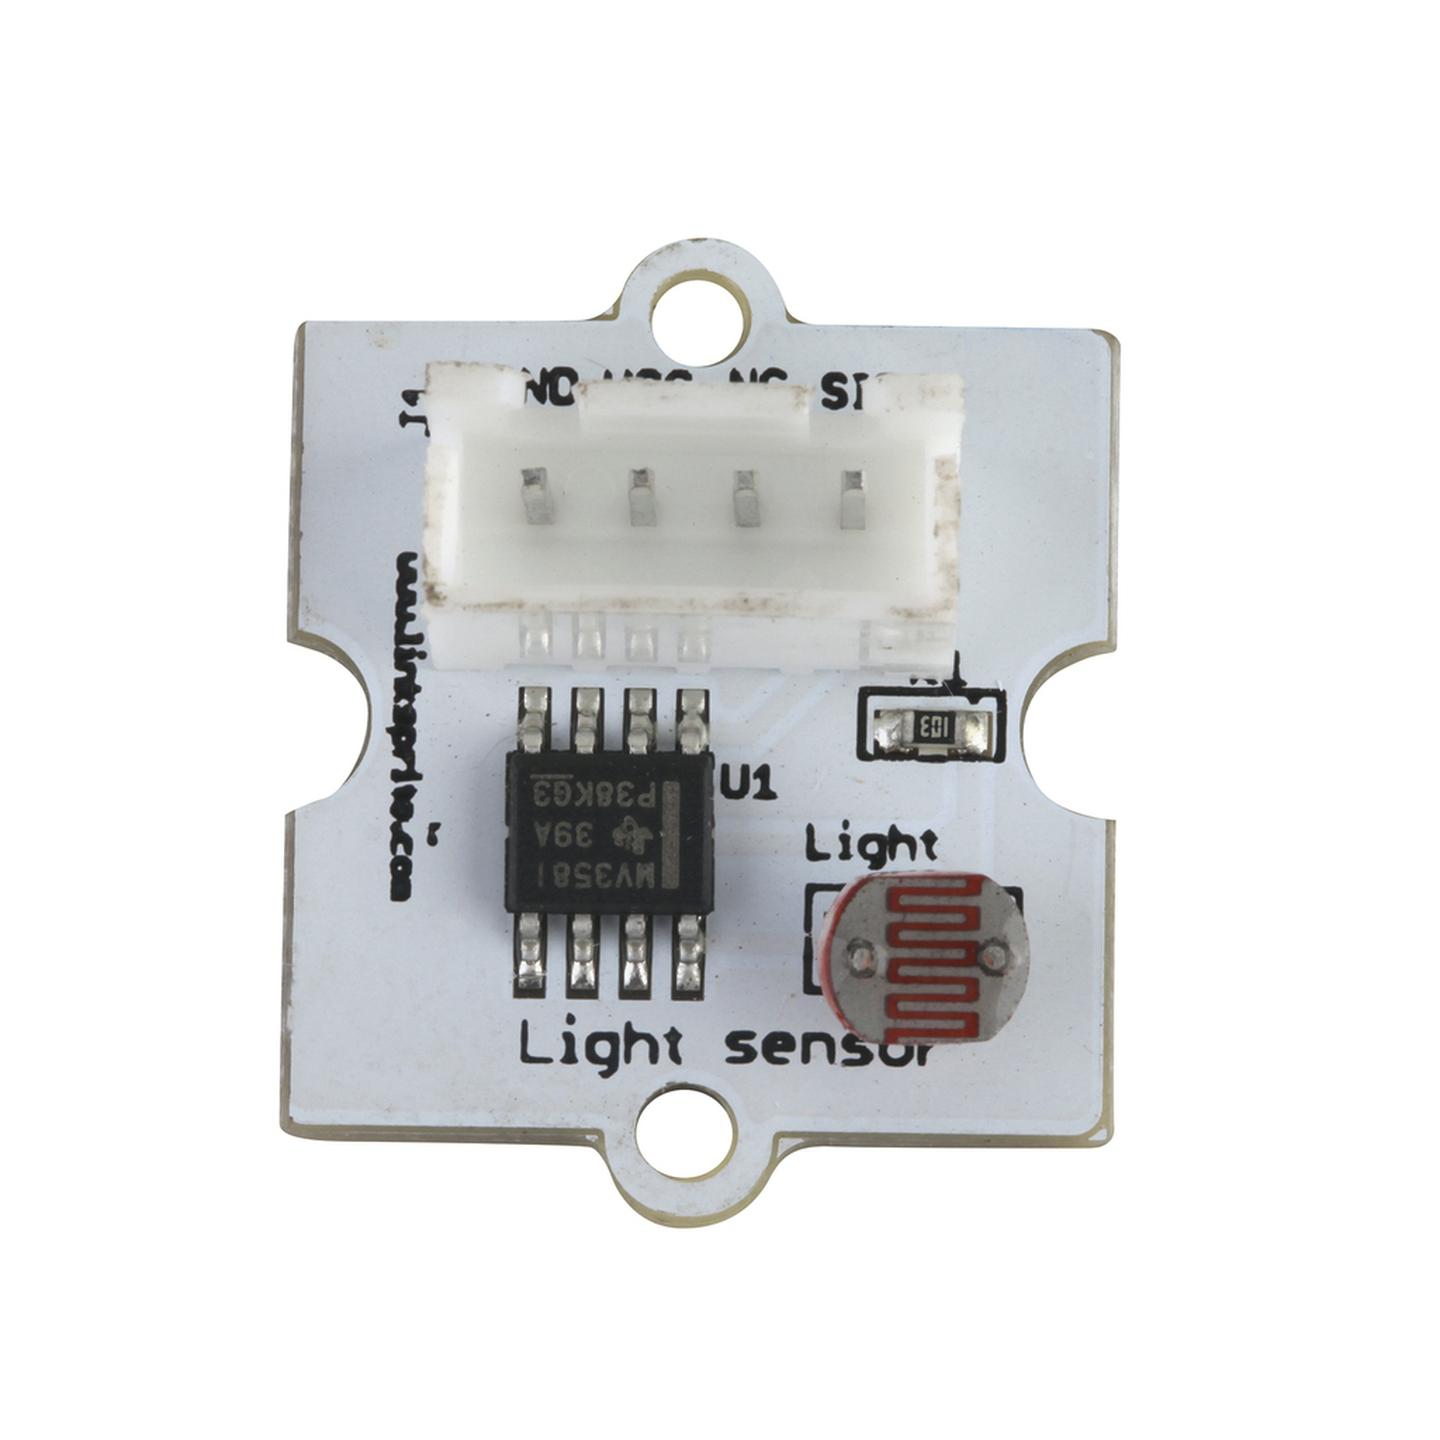 Linker light sensor for Arduino